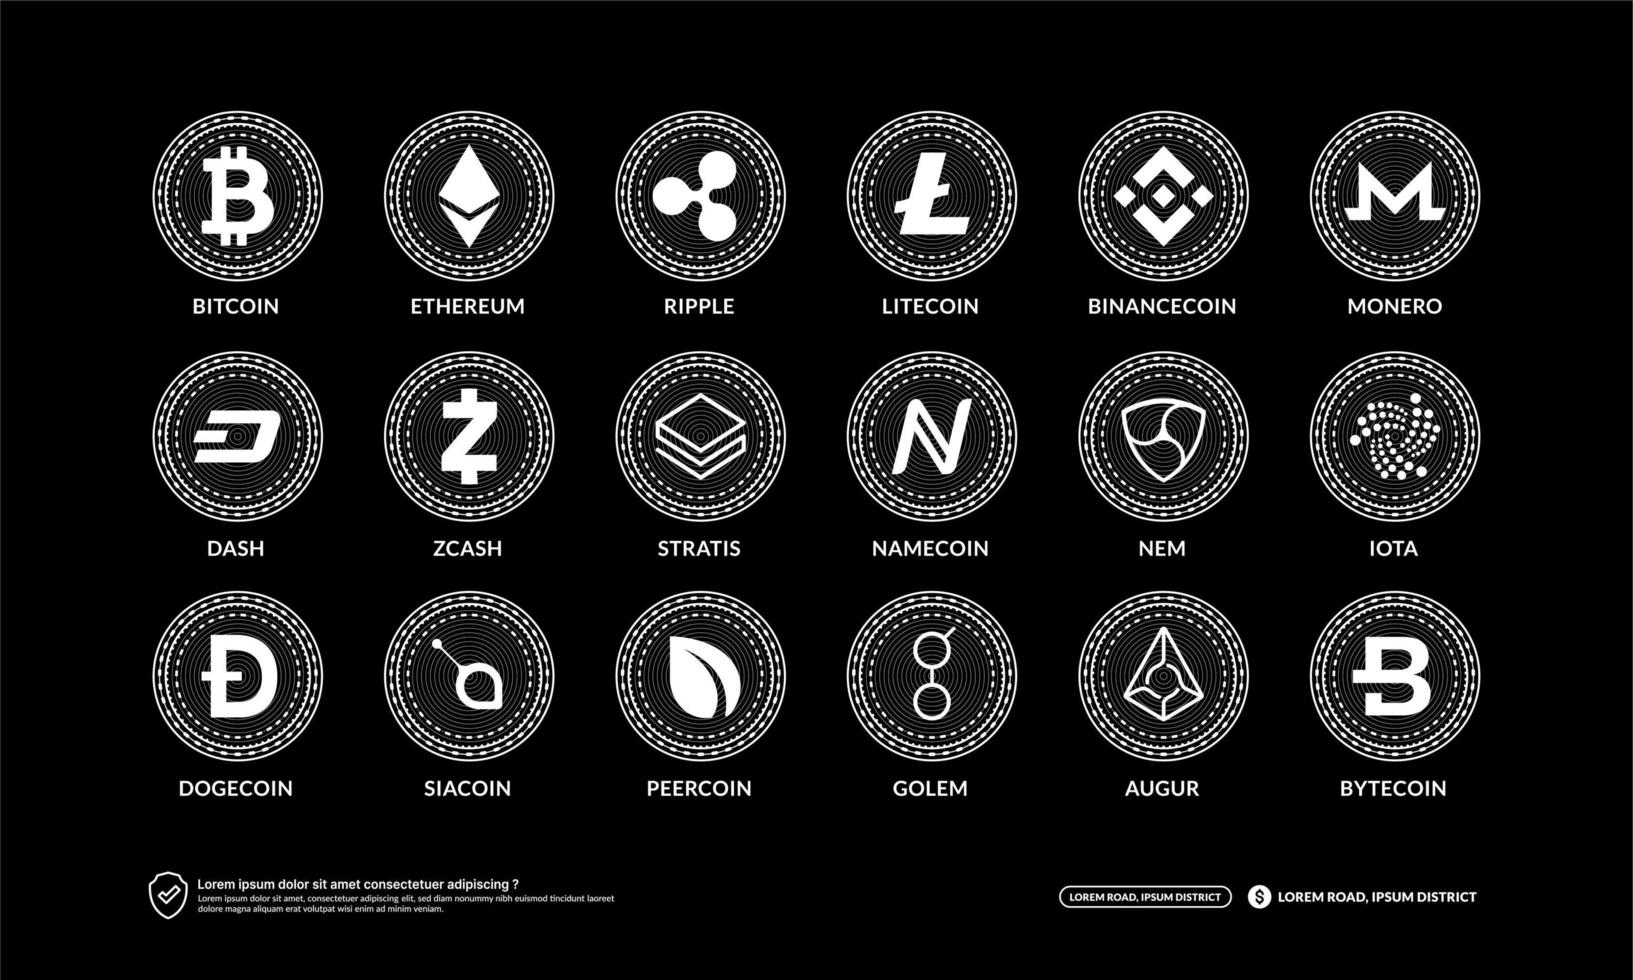 ensemble d'icônes de crypto-monnaie, technologie blockchain, symboles de pièces de monnaie et de jetons nft, logo isolé bitcoin, ethereum, litecoin, dogecoin, bnbcoin, tiret, monero, cardano, stella, ondulation, bytecoin, zcash vecteur